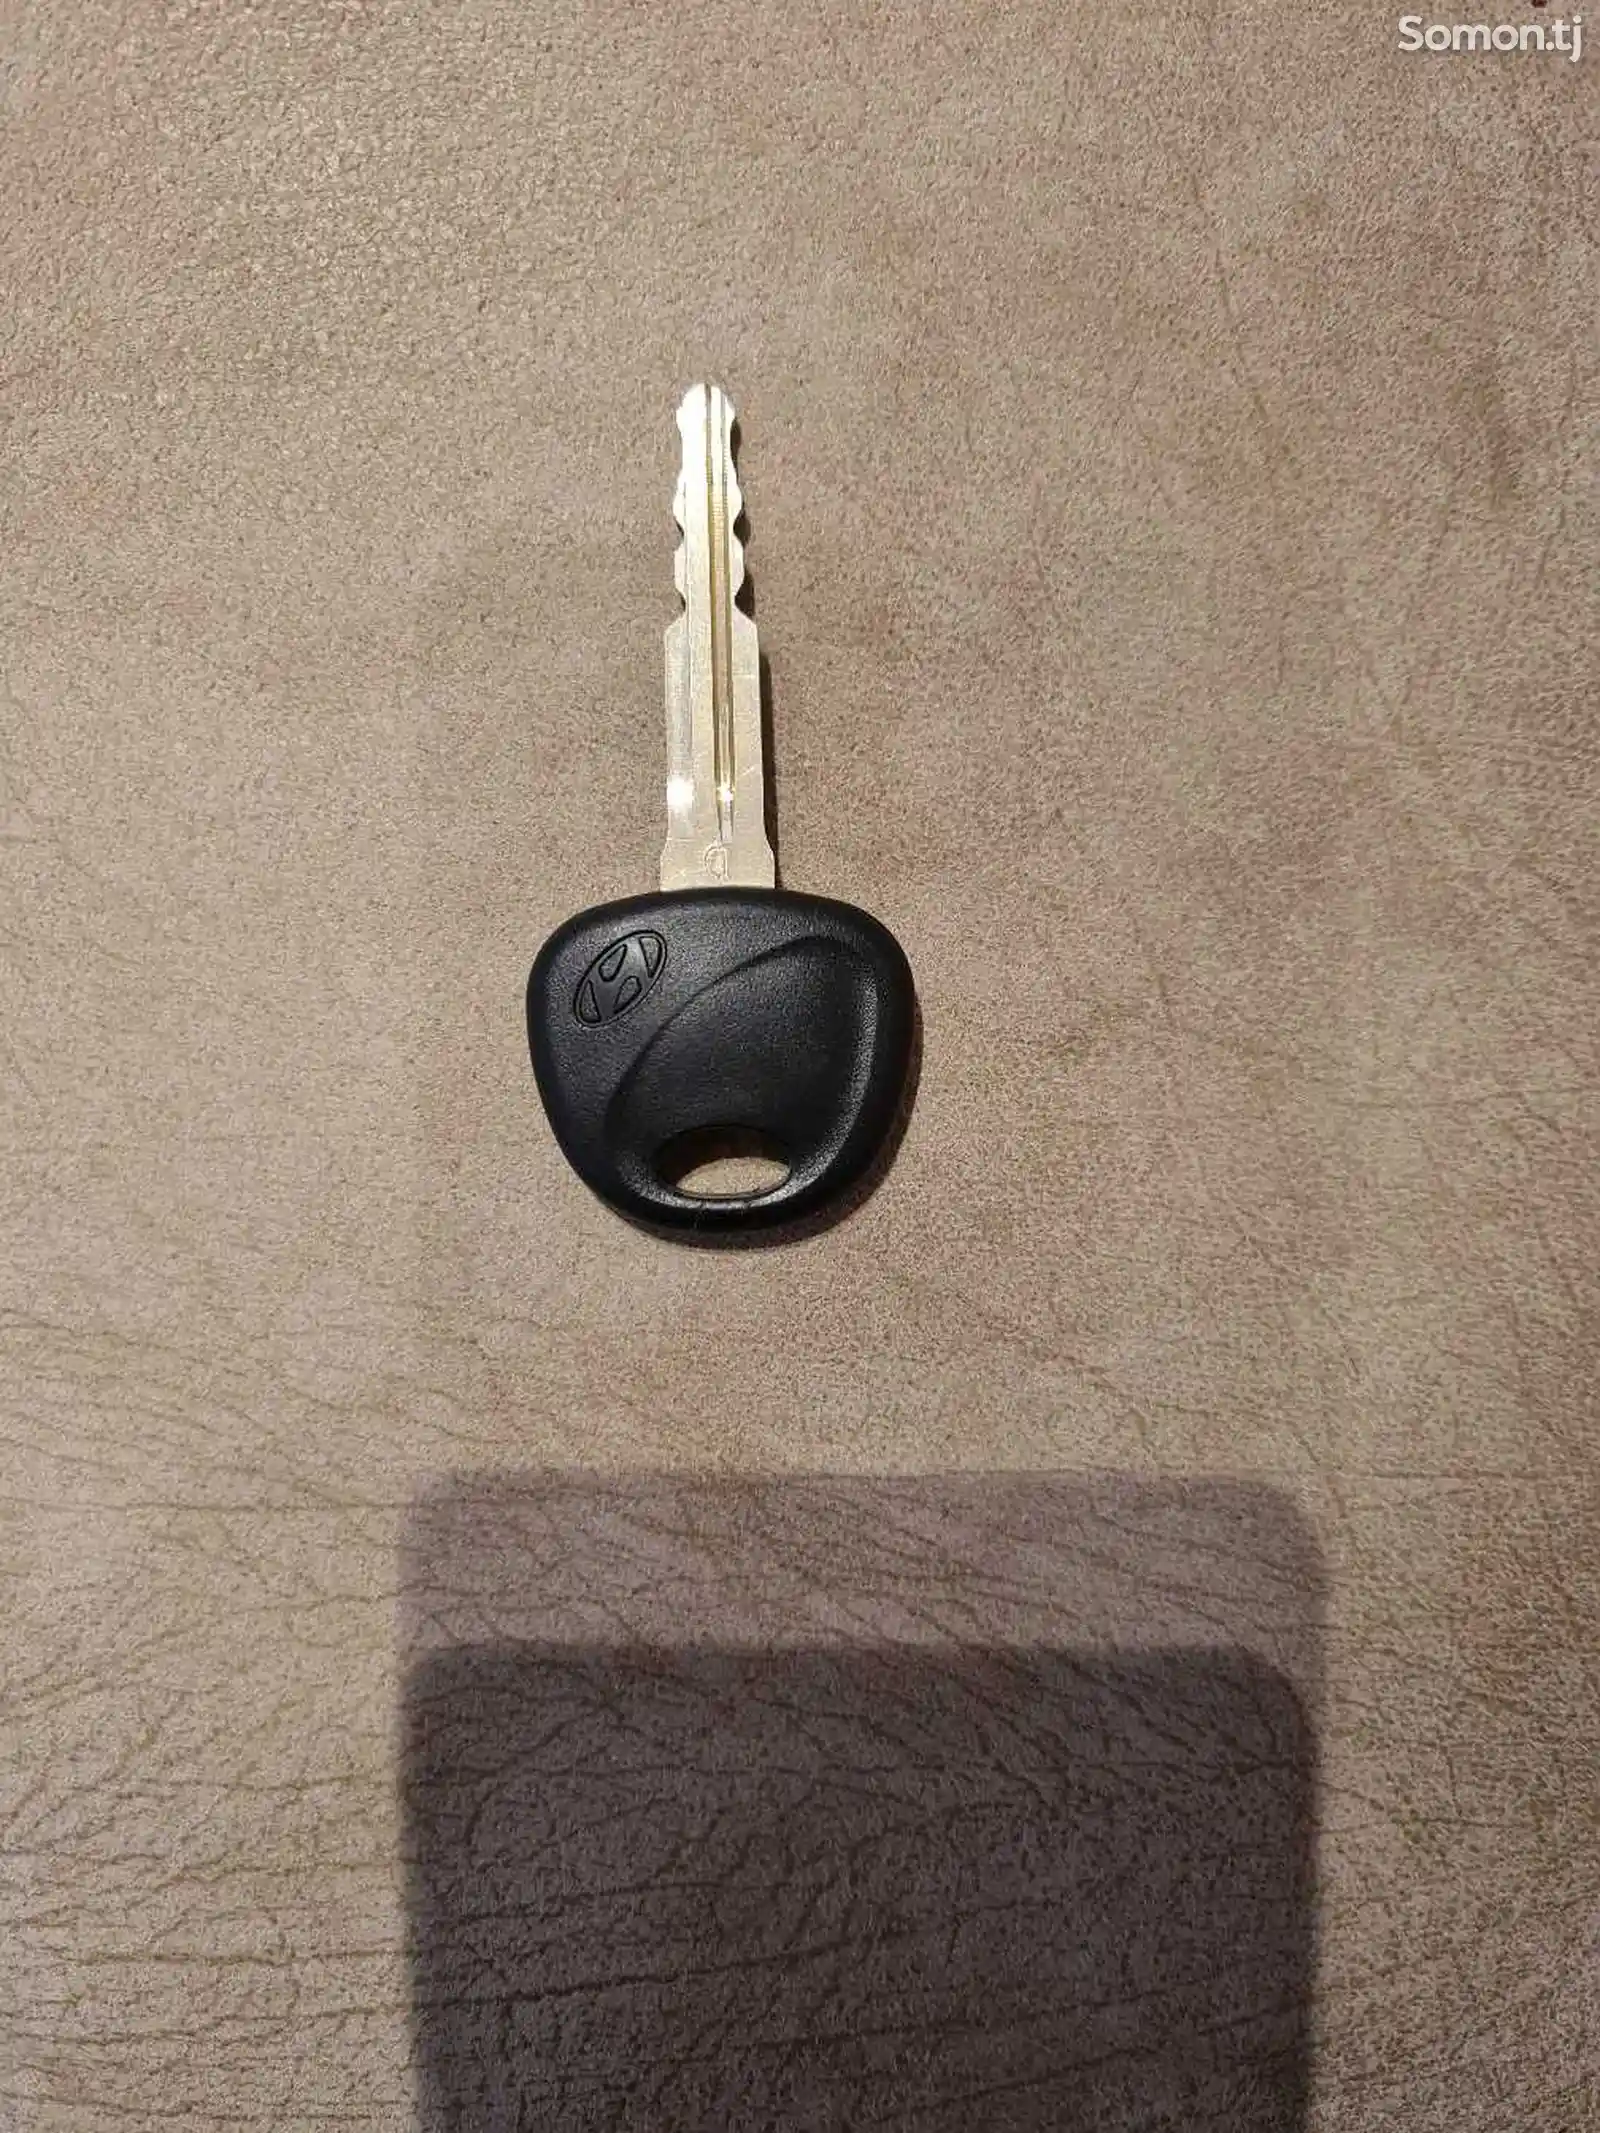 Ключ для Hyundai Avante HD